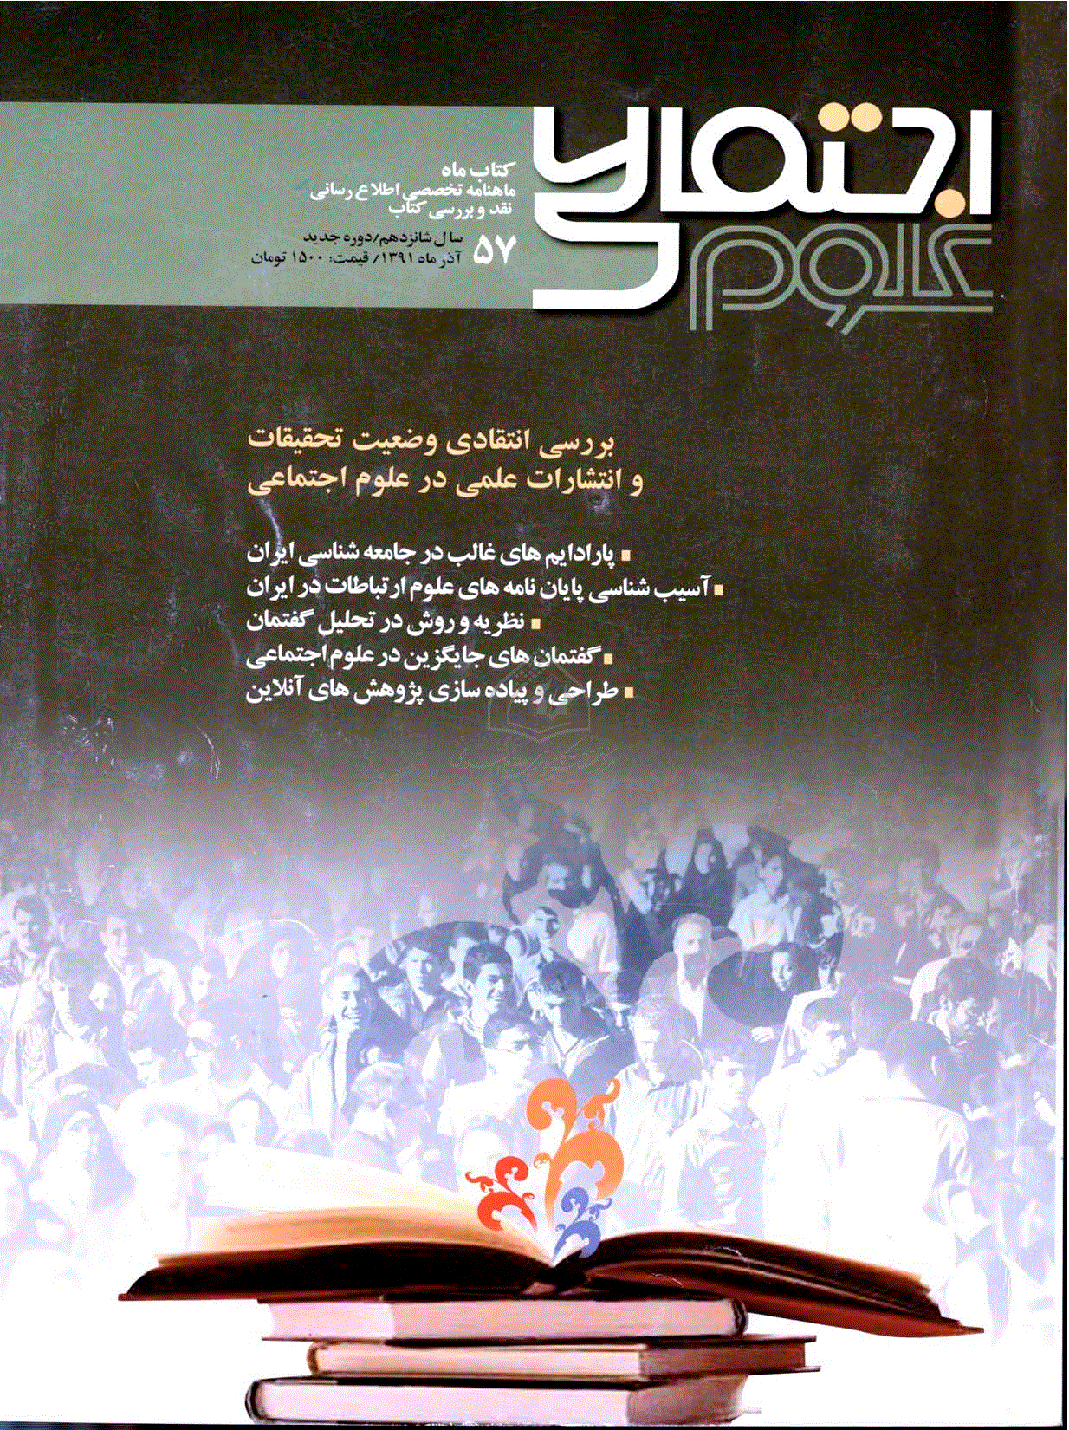 کتاب ماه علوم اجتماعی - آذر 1391 - شماره 57